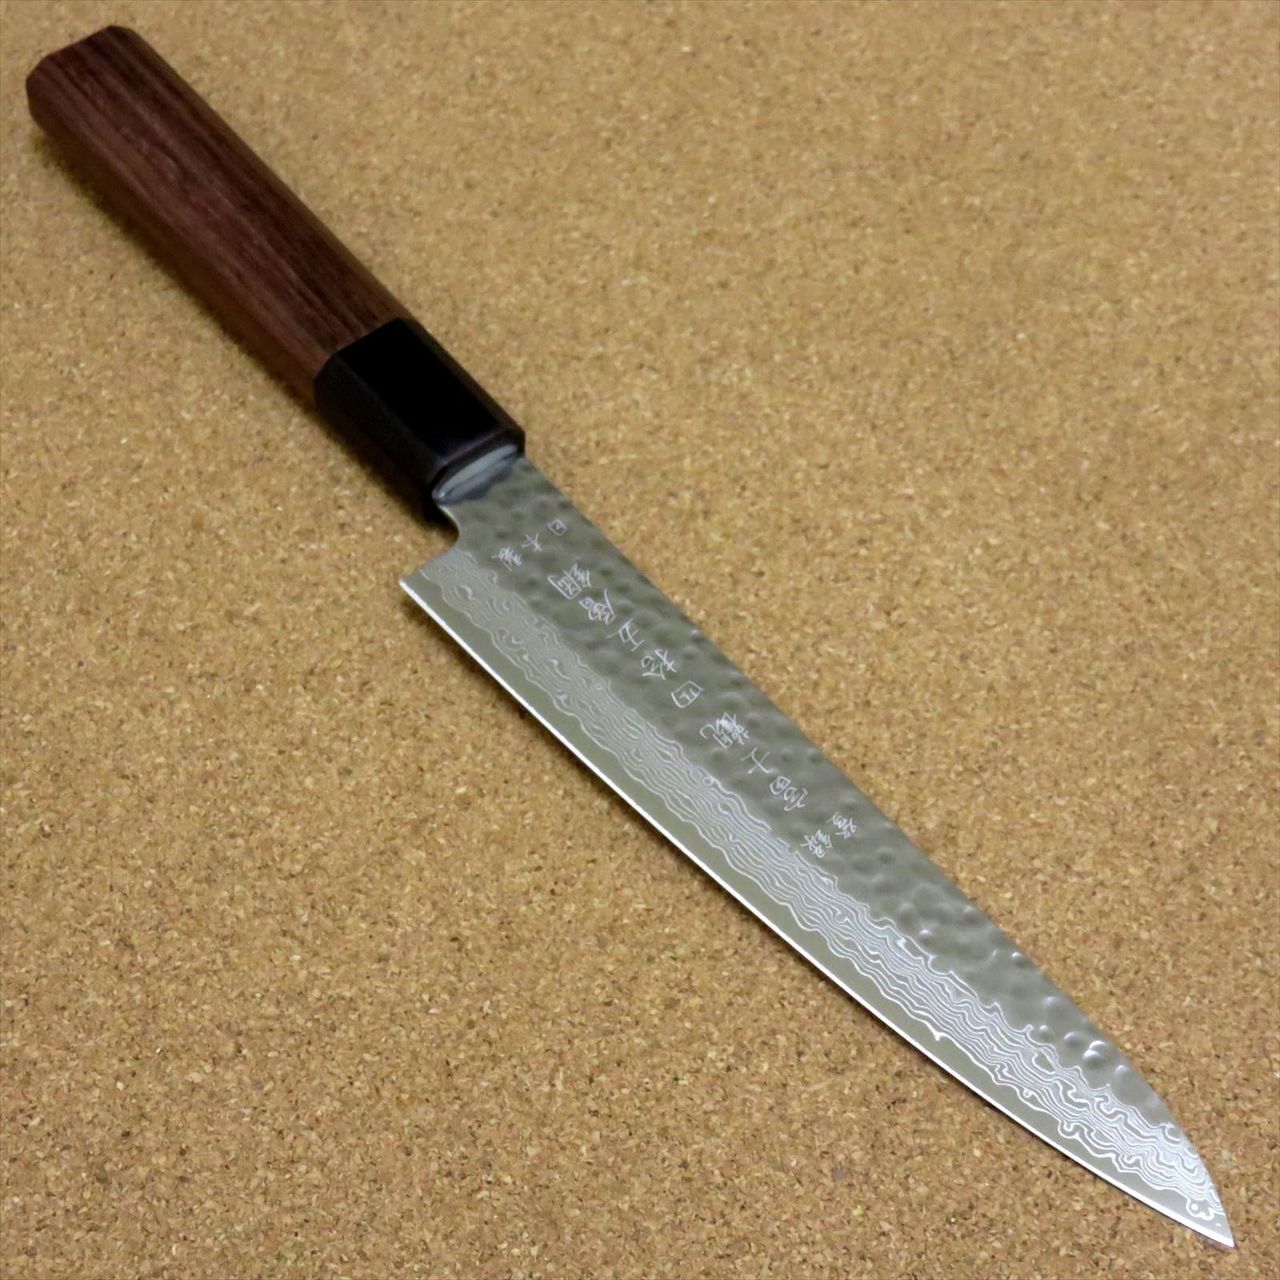 Damascus Kitchen Knifes, Japanese Utility Knife